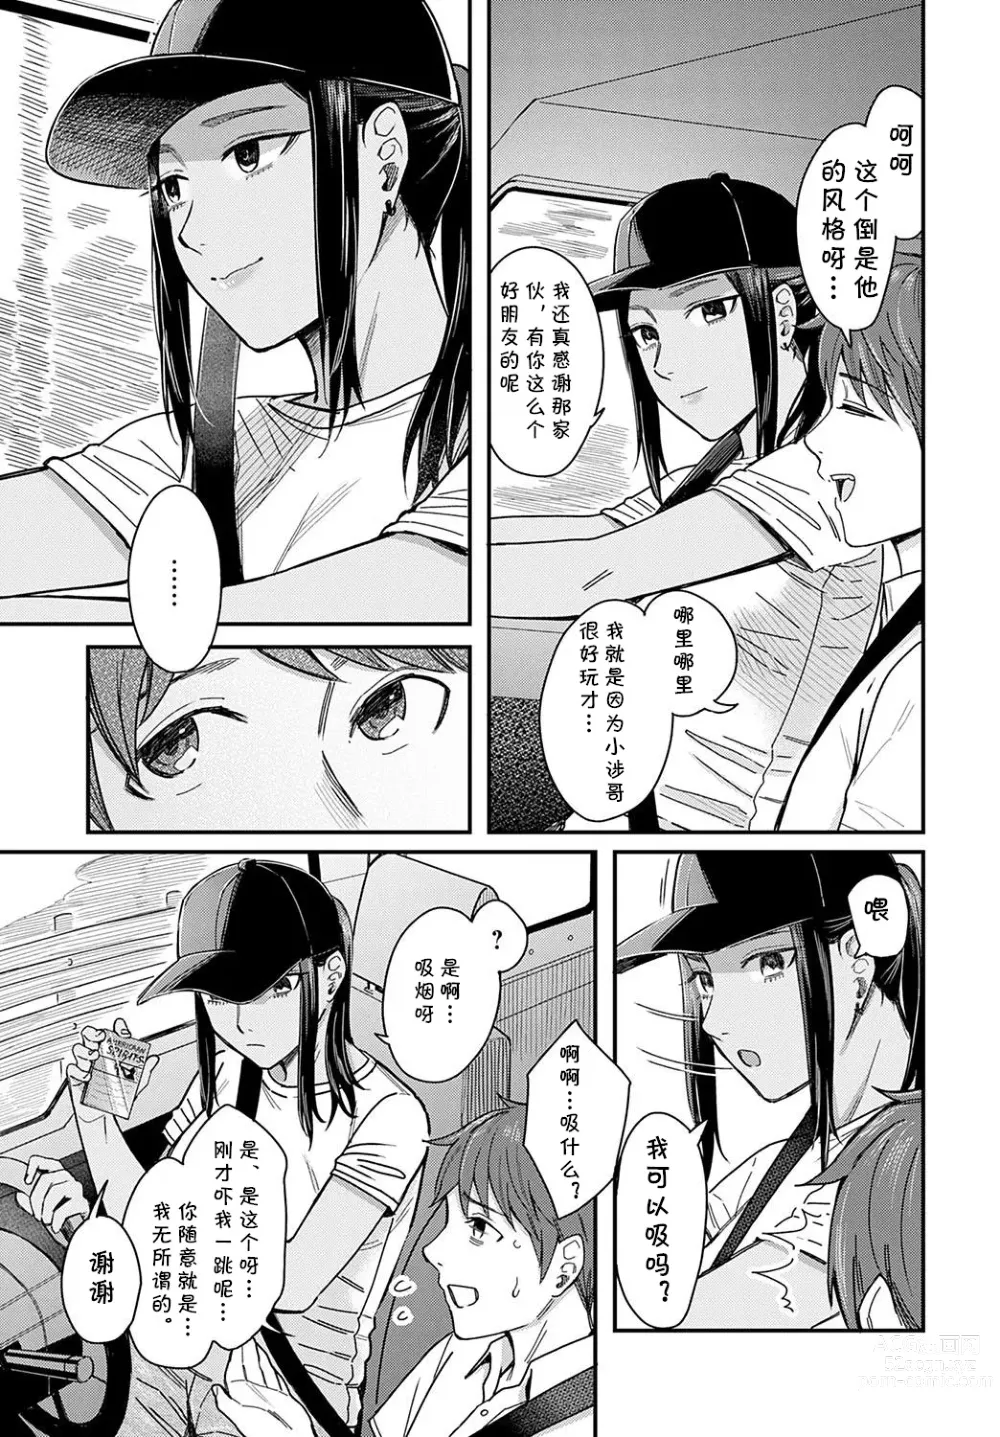 Page 3 of manga Shiosai